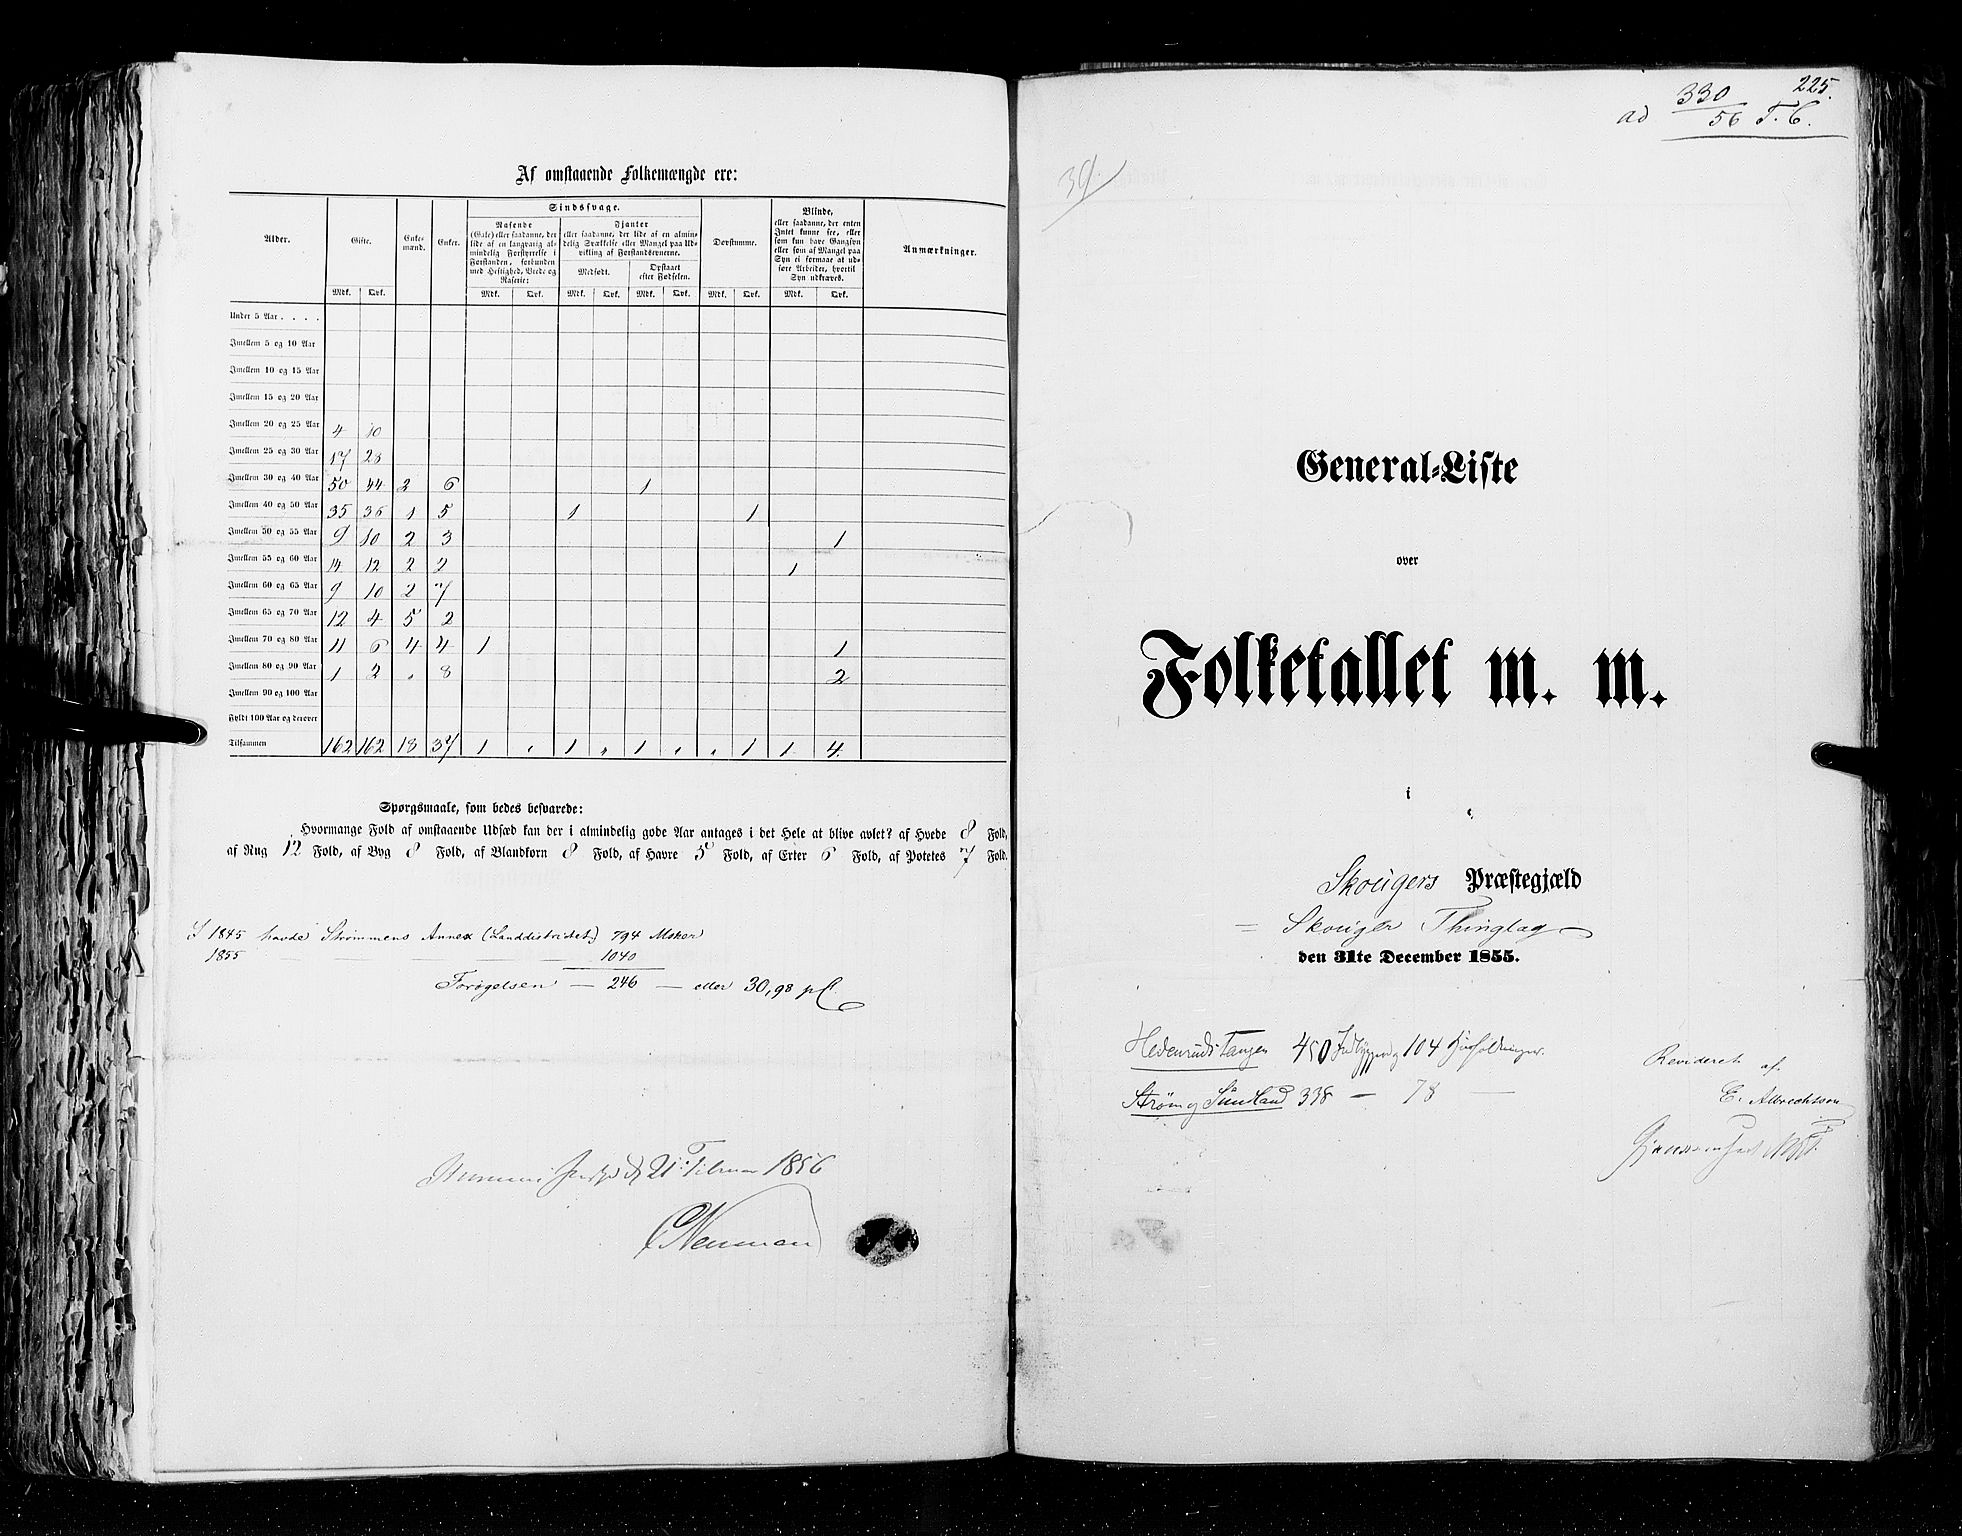 RA, Folketellingen 1855, bind 2: Kristians amt, Buskerud amt og Jarlsberg og Larvik amt, 1855, s. 225